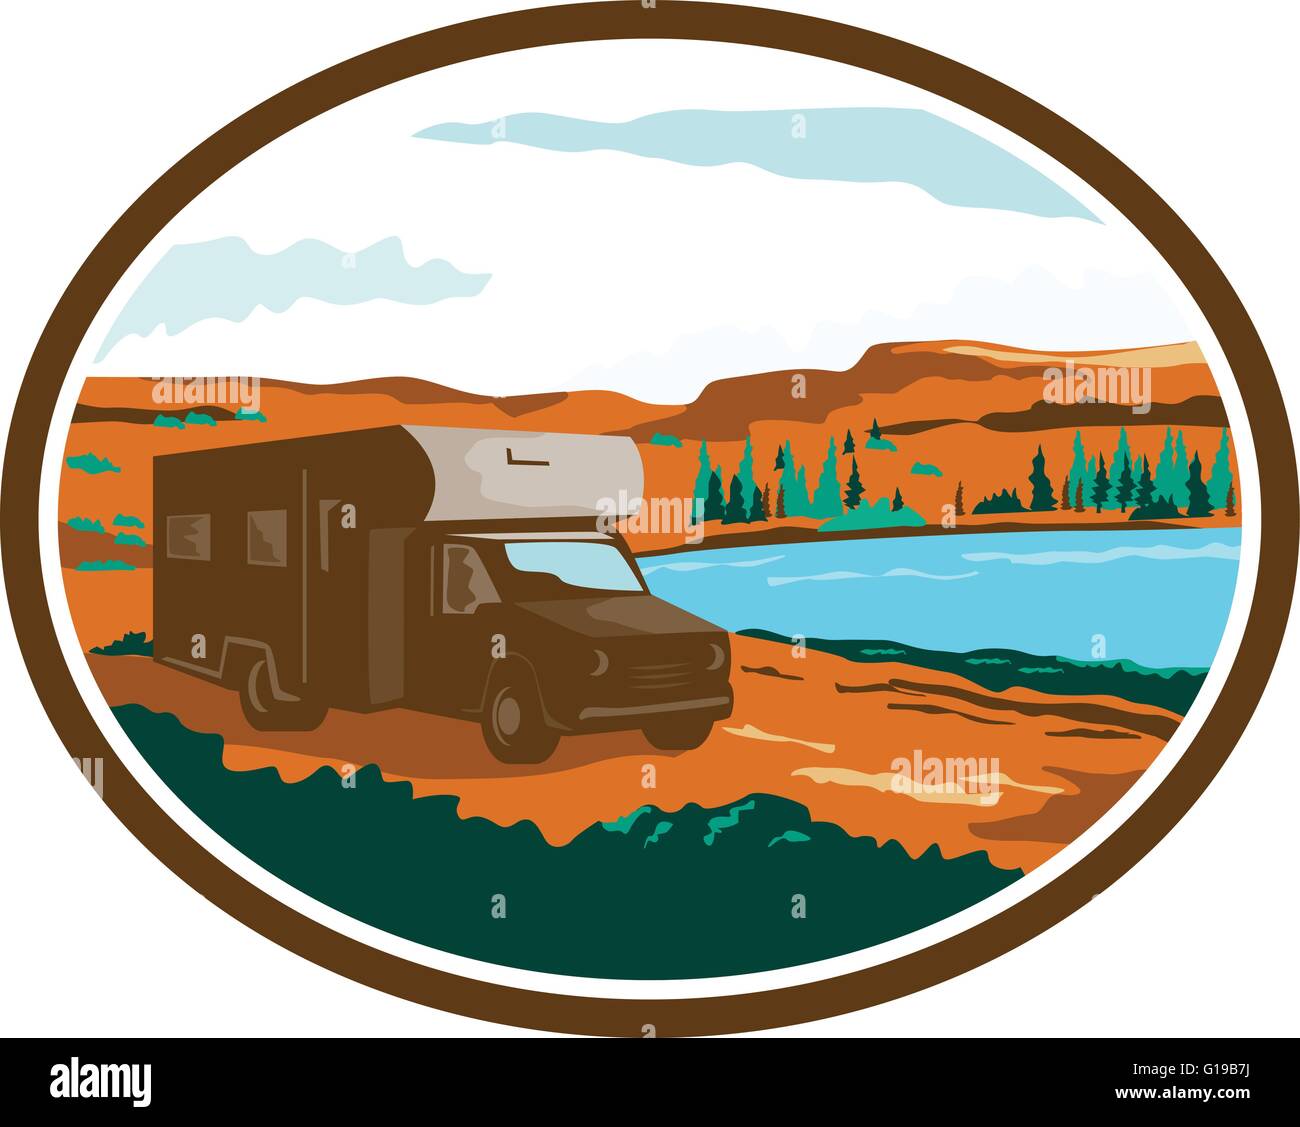 Beispiel für ein Wohnmobil Camper van rv Reisen in die Wüste oder trockenen Steppe mit Wasser Becken See im Hintergrund innerhalb eingestellt Stock Vektor